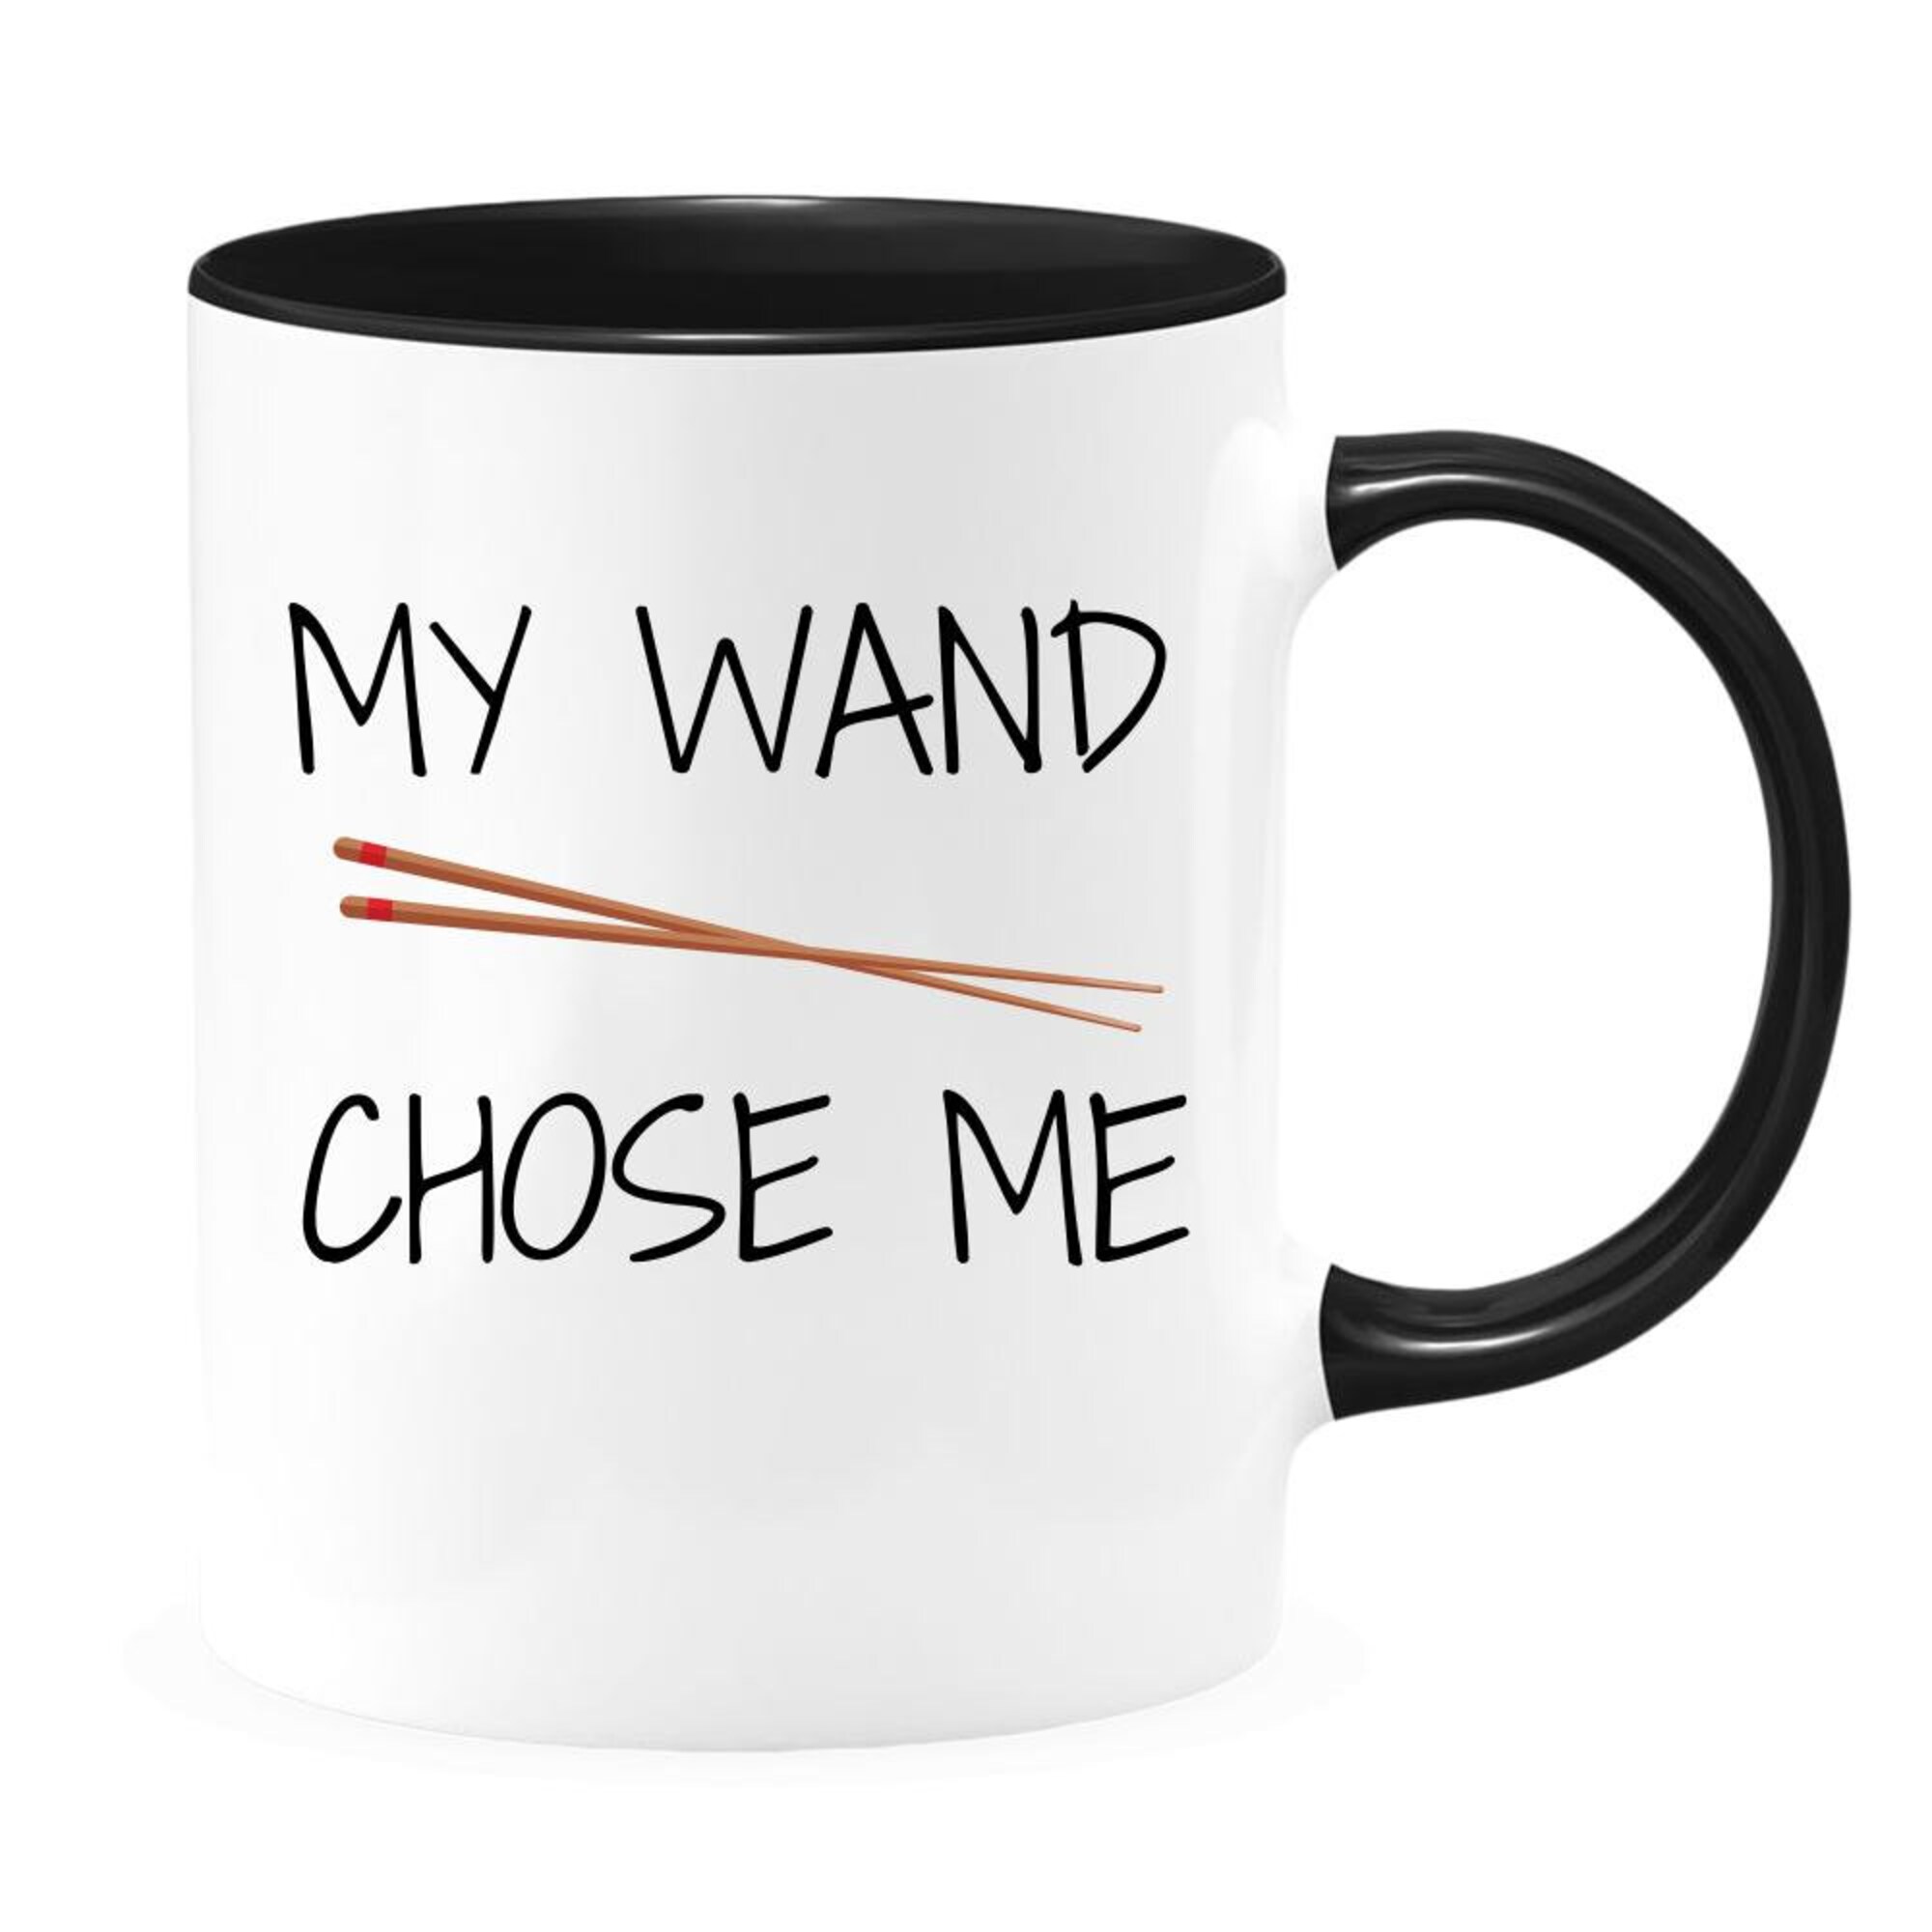 My Wand (Chopsticks) Chose Me Coffee Tea Mug, Chopsticks Mu